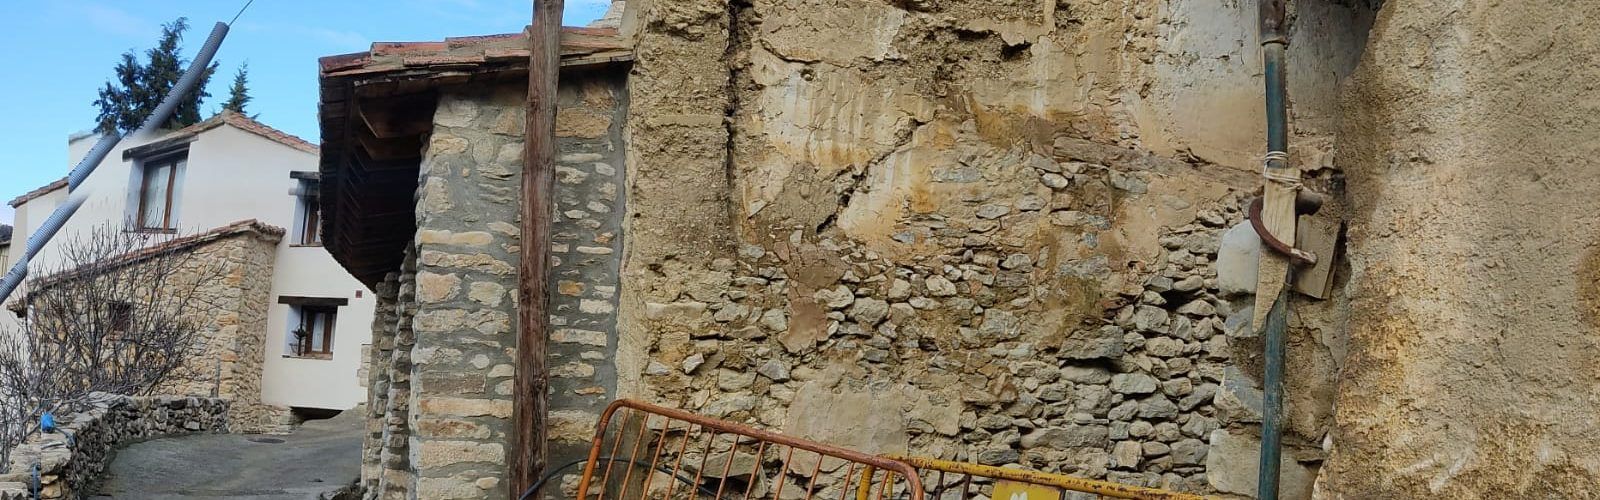 Veïns d’Ortells urgeixen solucions al risc d’enderrocament d’una vivenda sobre els safaretjos